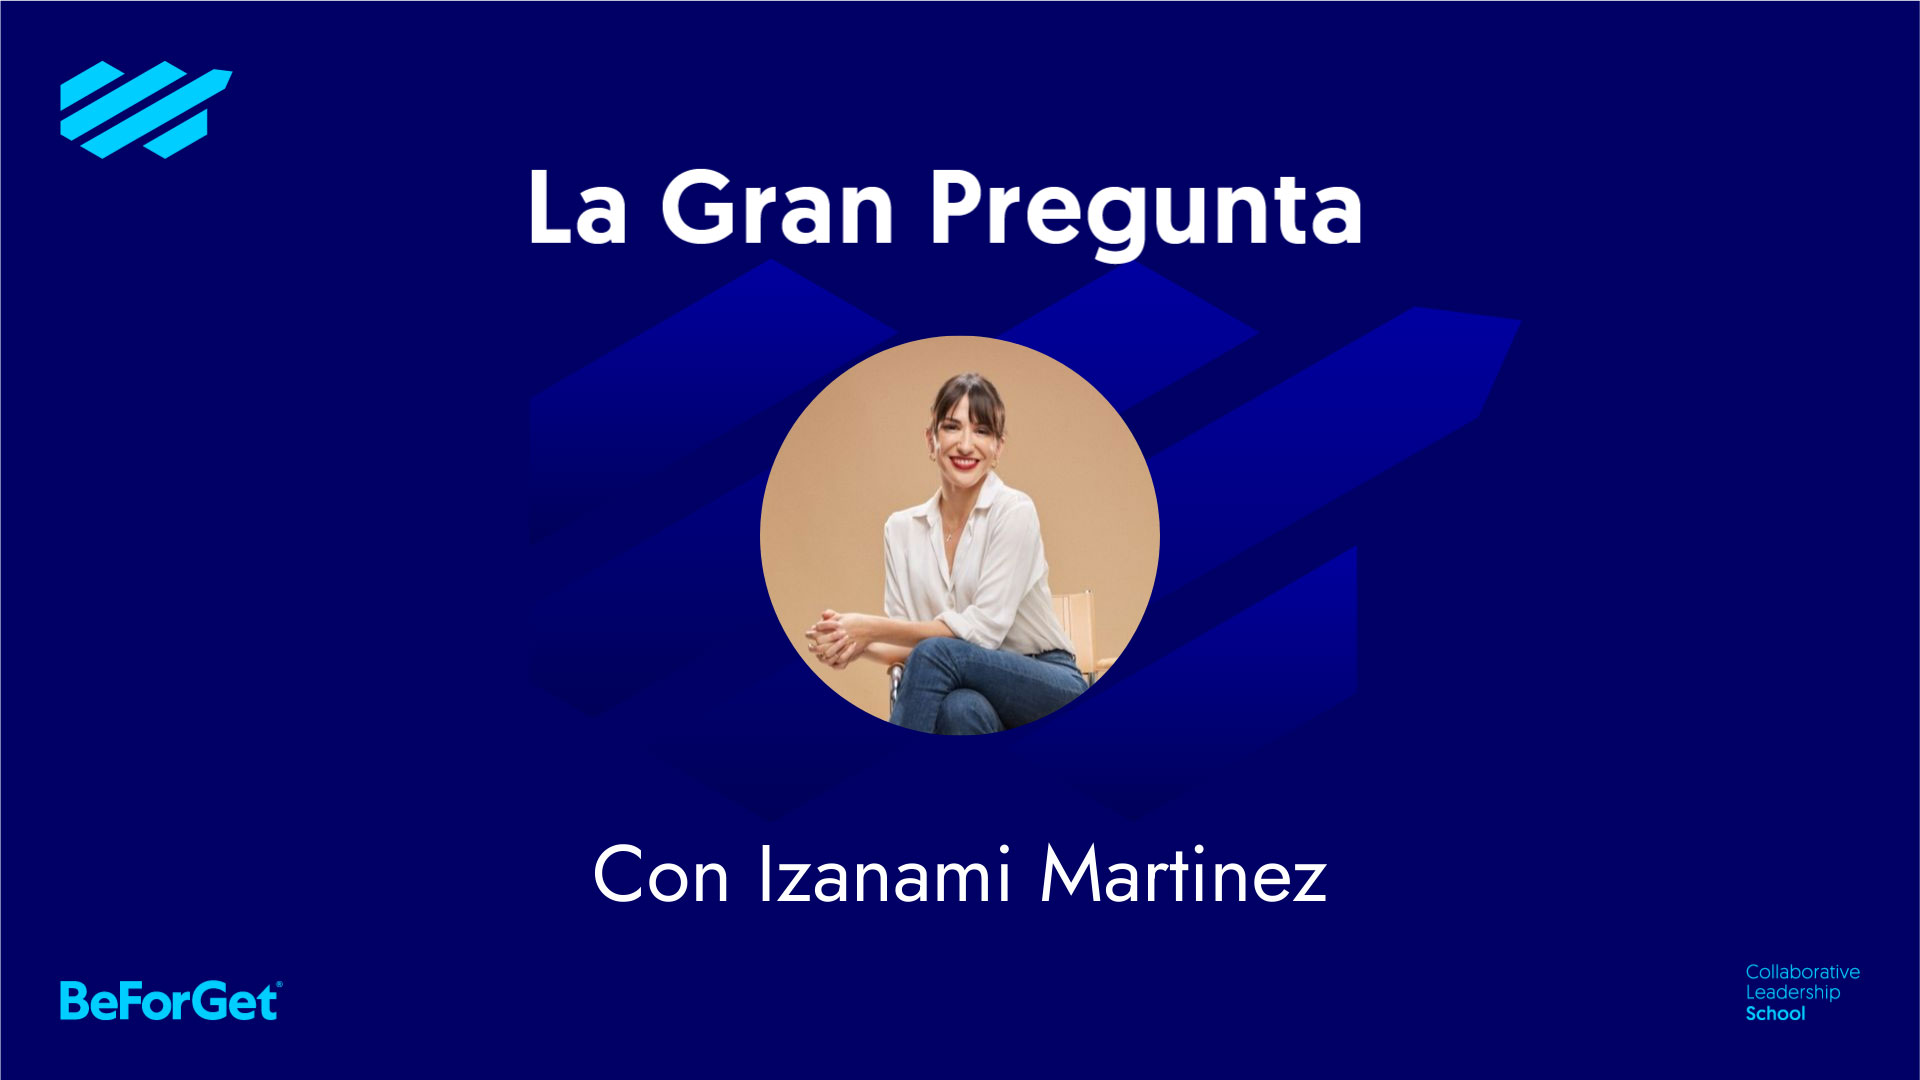 Izanami Martinez - Maternidad y antropología para un liderazgo consciente